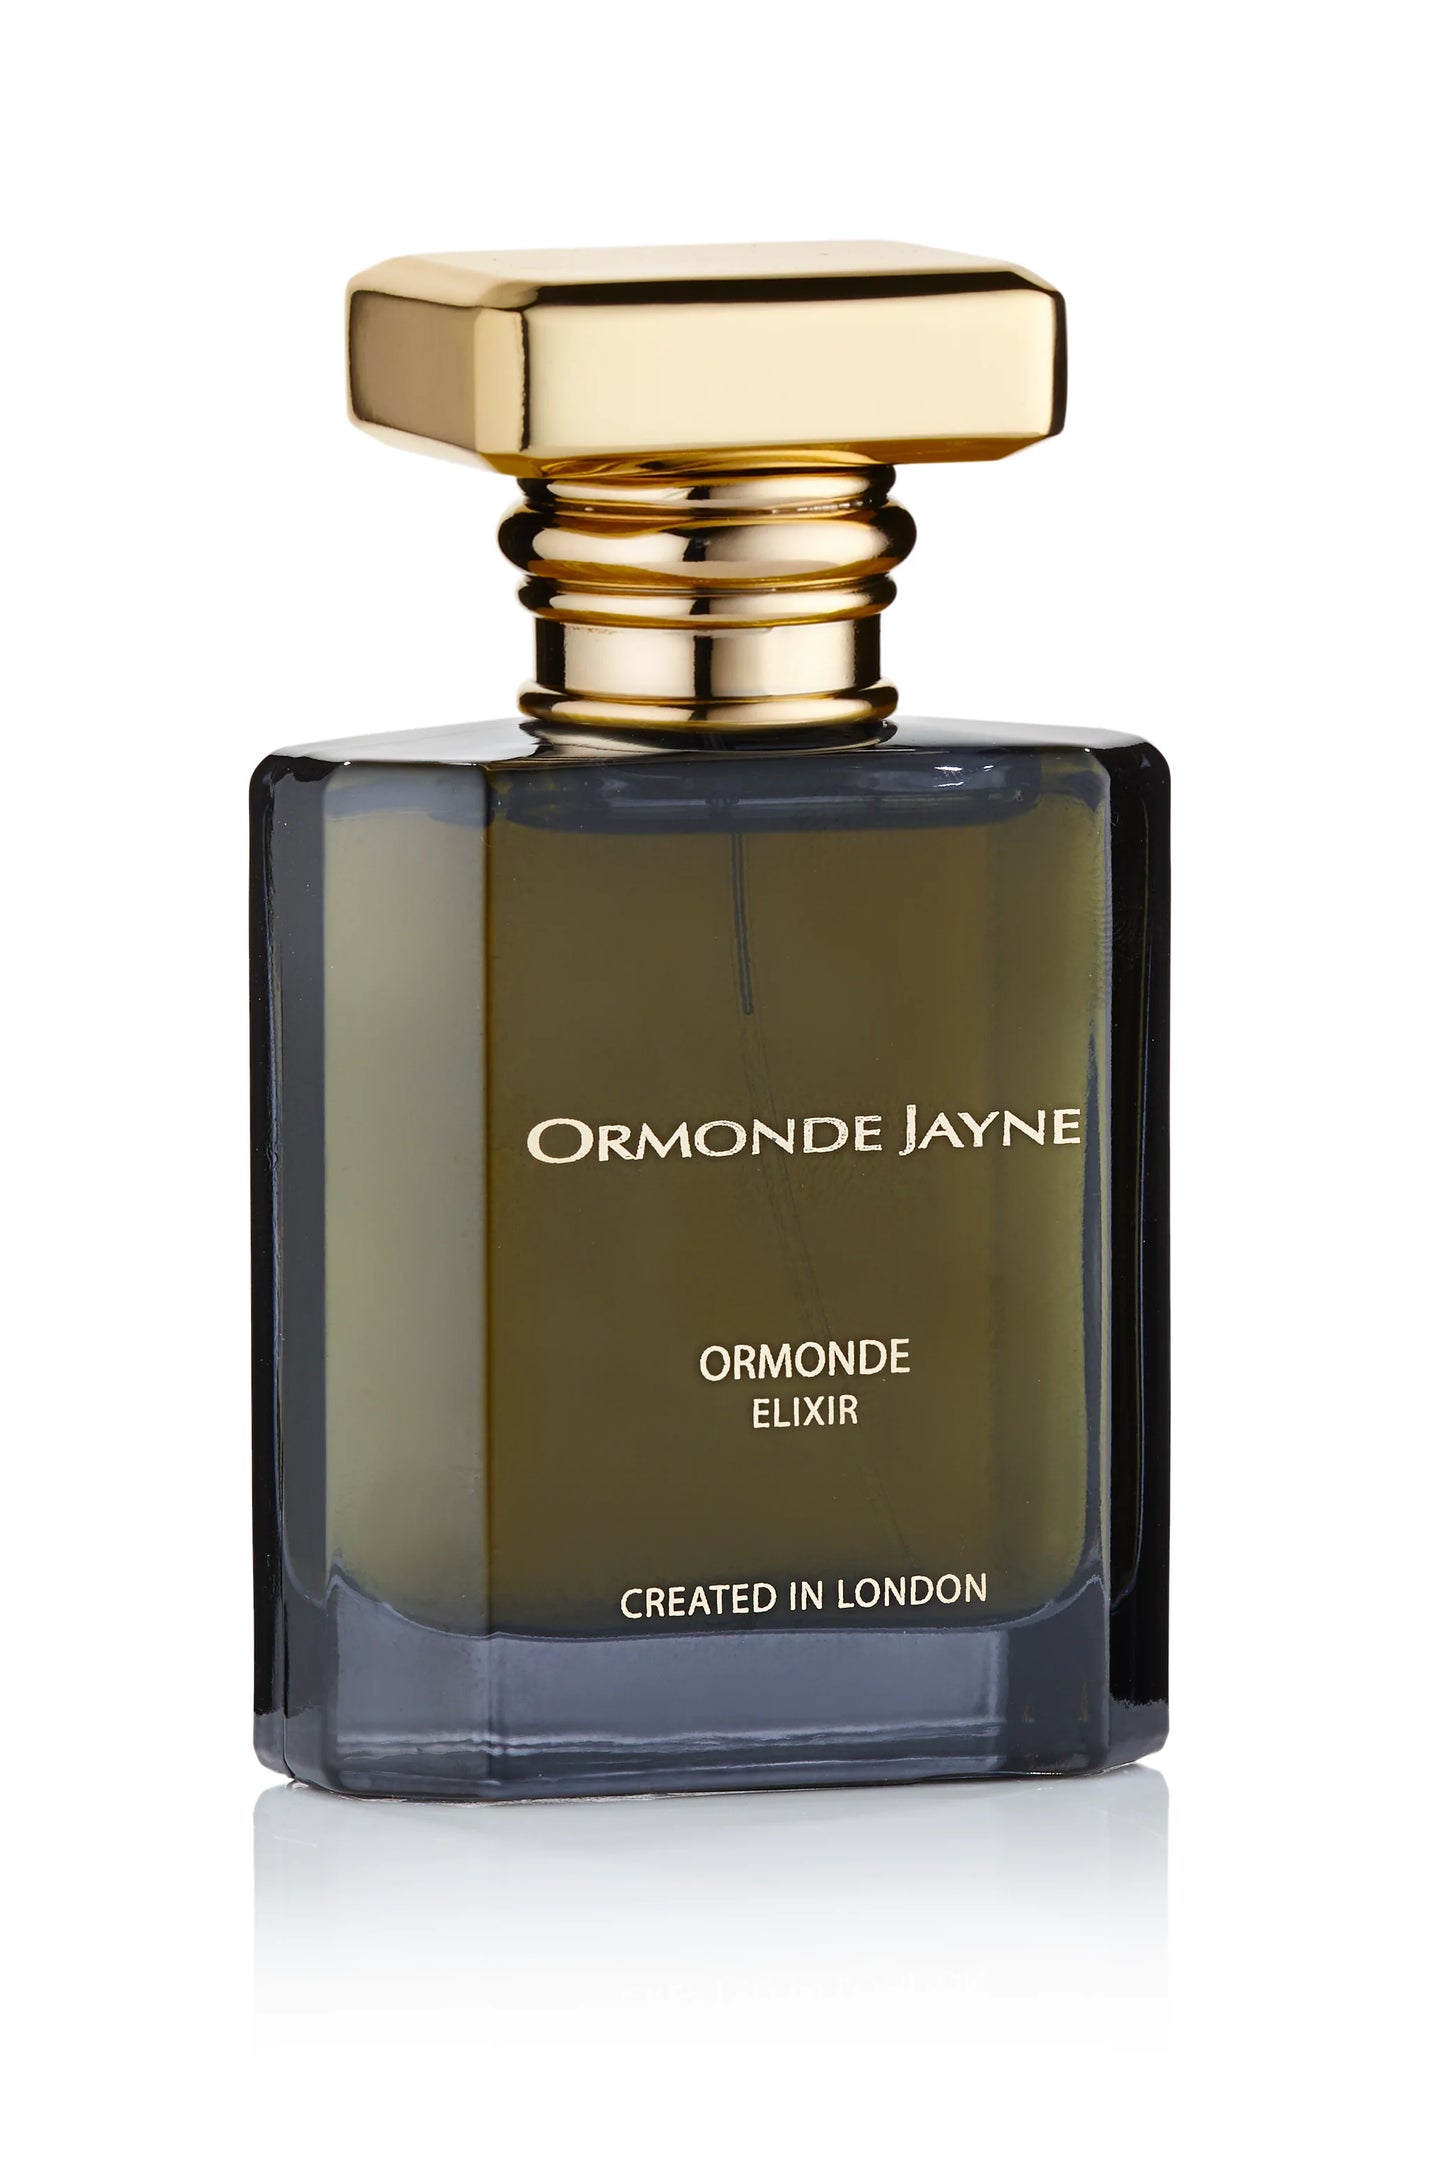 Ormonde Jayne Ormonde Elixir 2ml 0.06 fl. oz oficiālais smaržas paraugs